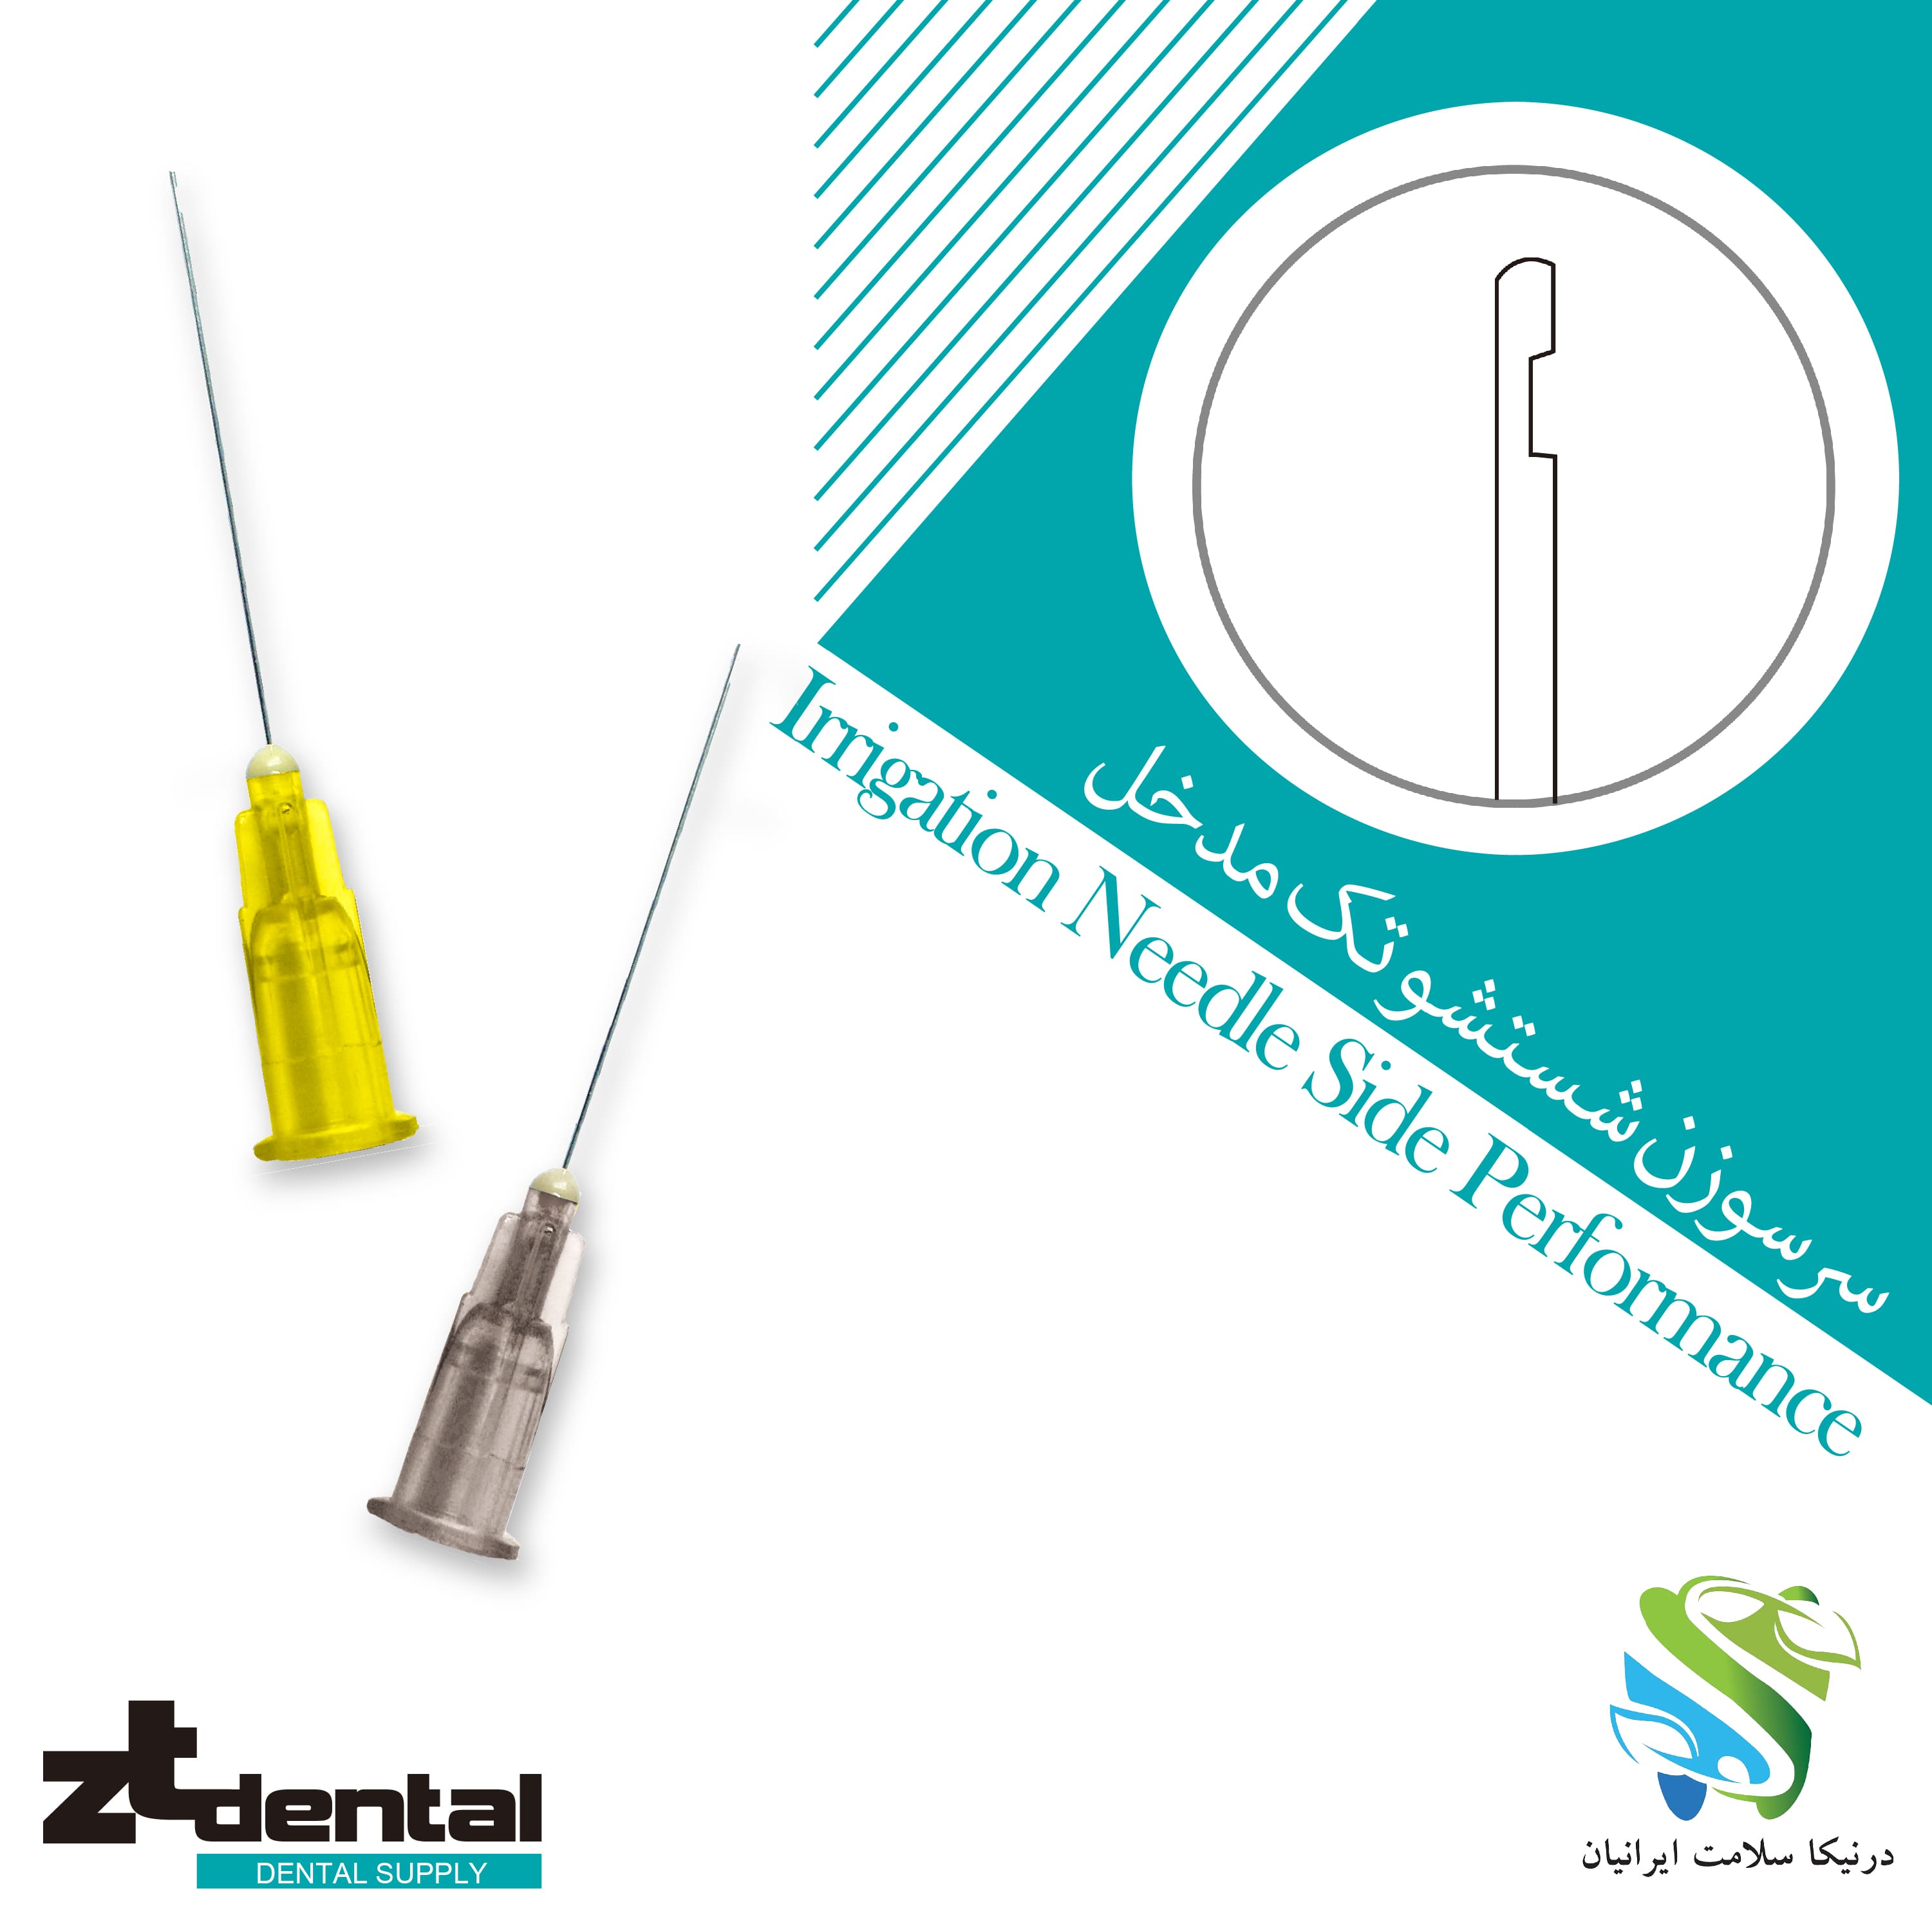 سرسوزن شستشو تک مدخل  Irrigation Needle Side Perforation zt dental